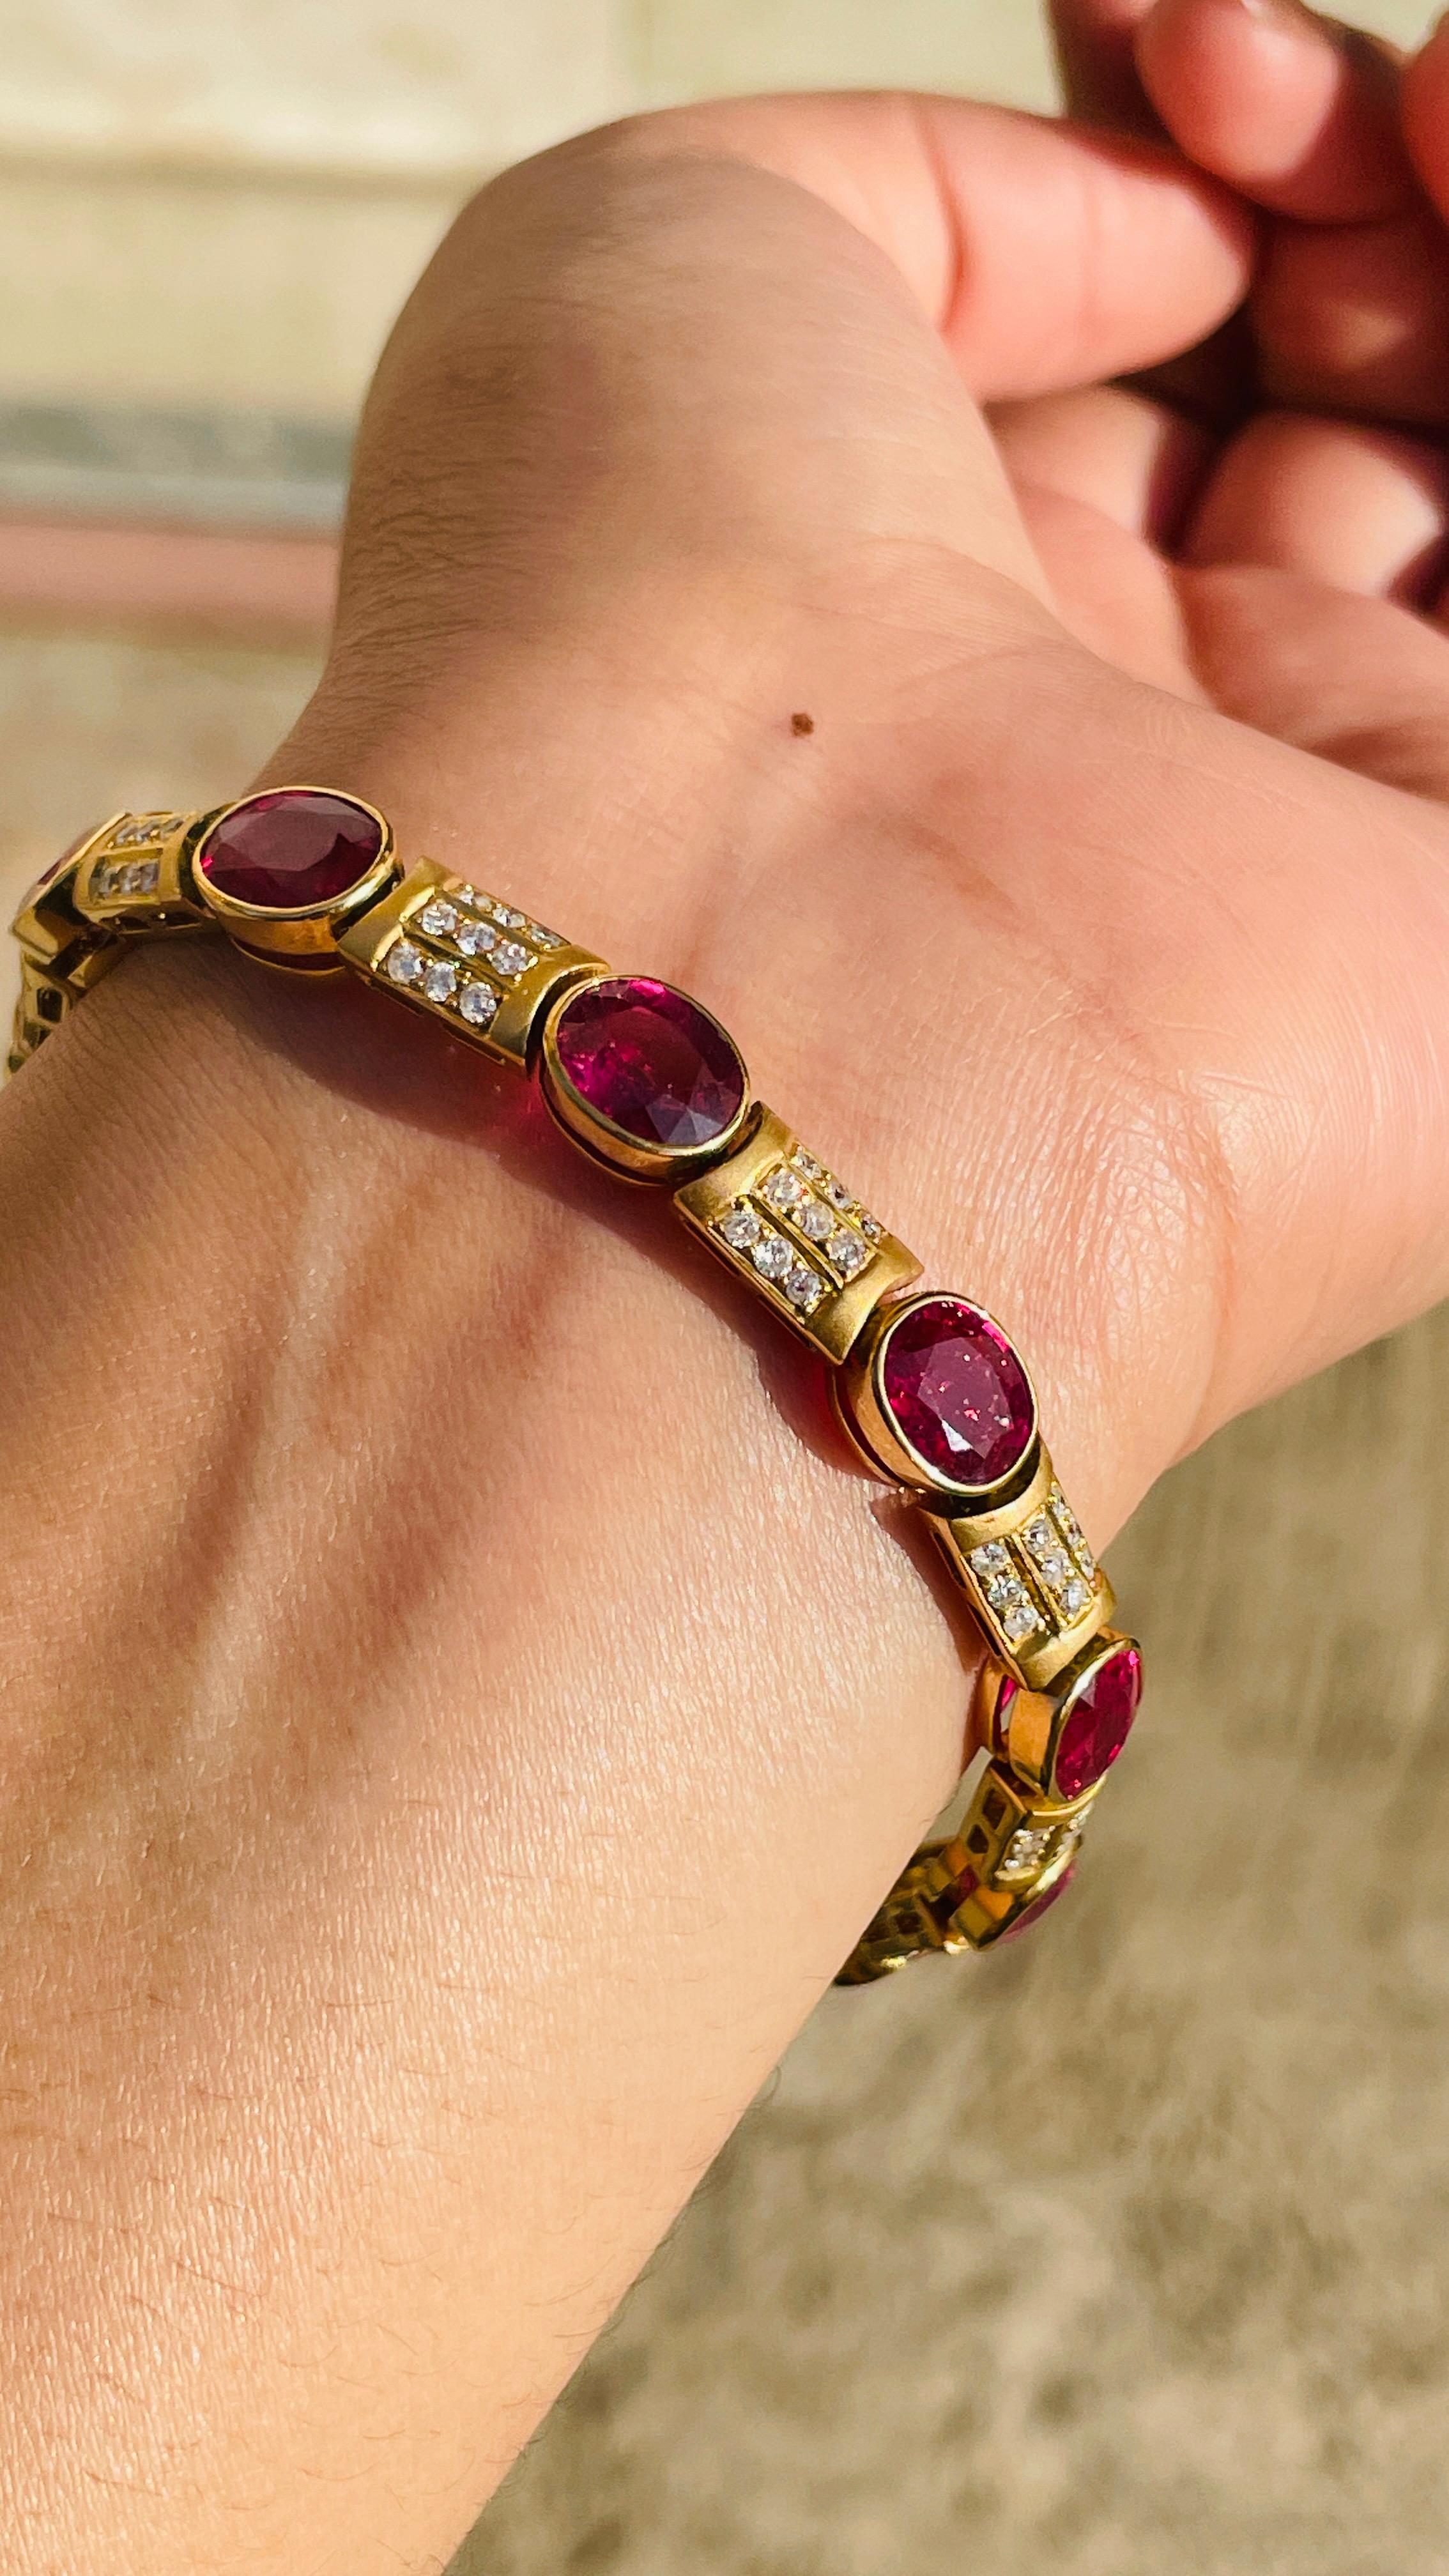 Bracelet de rubis et diamants en or 18K. Il est doté d'une pierre précieuse de taille ovale parfaite qui vous permettra de vous distinguer en toute occasion ou lors d'un événement.
Un bracelet de tennis est un bijou essentiel pour le jour de votre